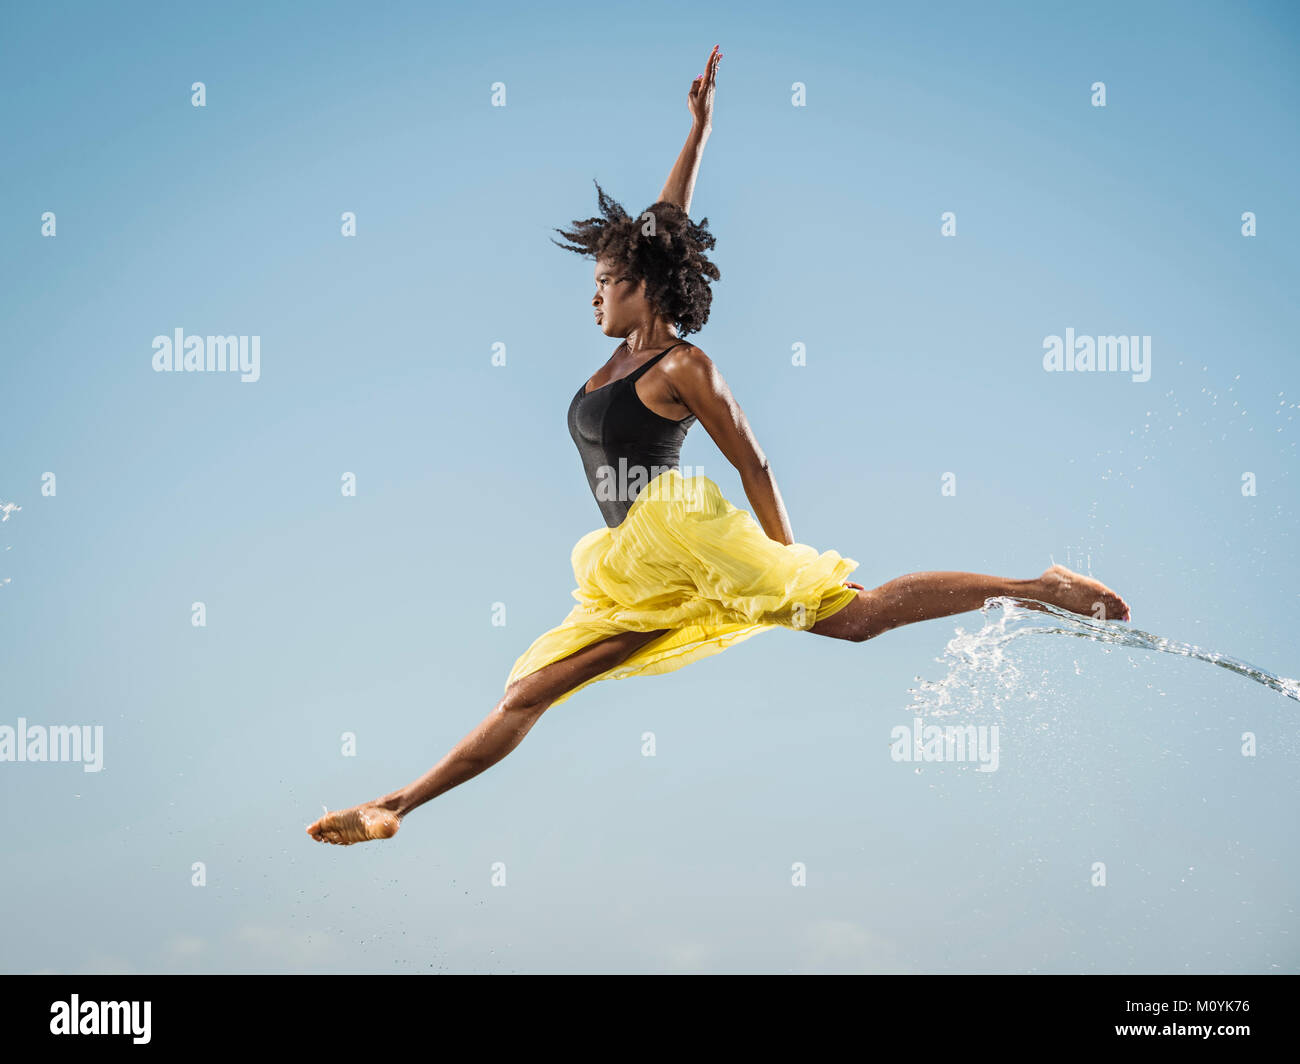 Water spraying on black woman ballet dancing Stock Photo